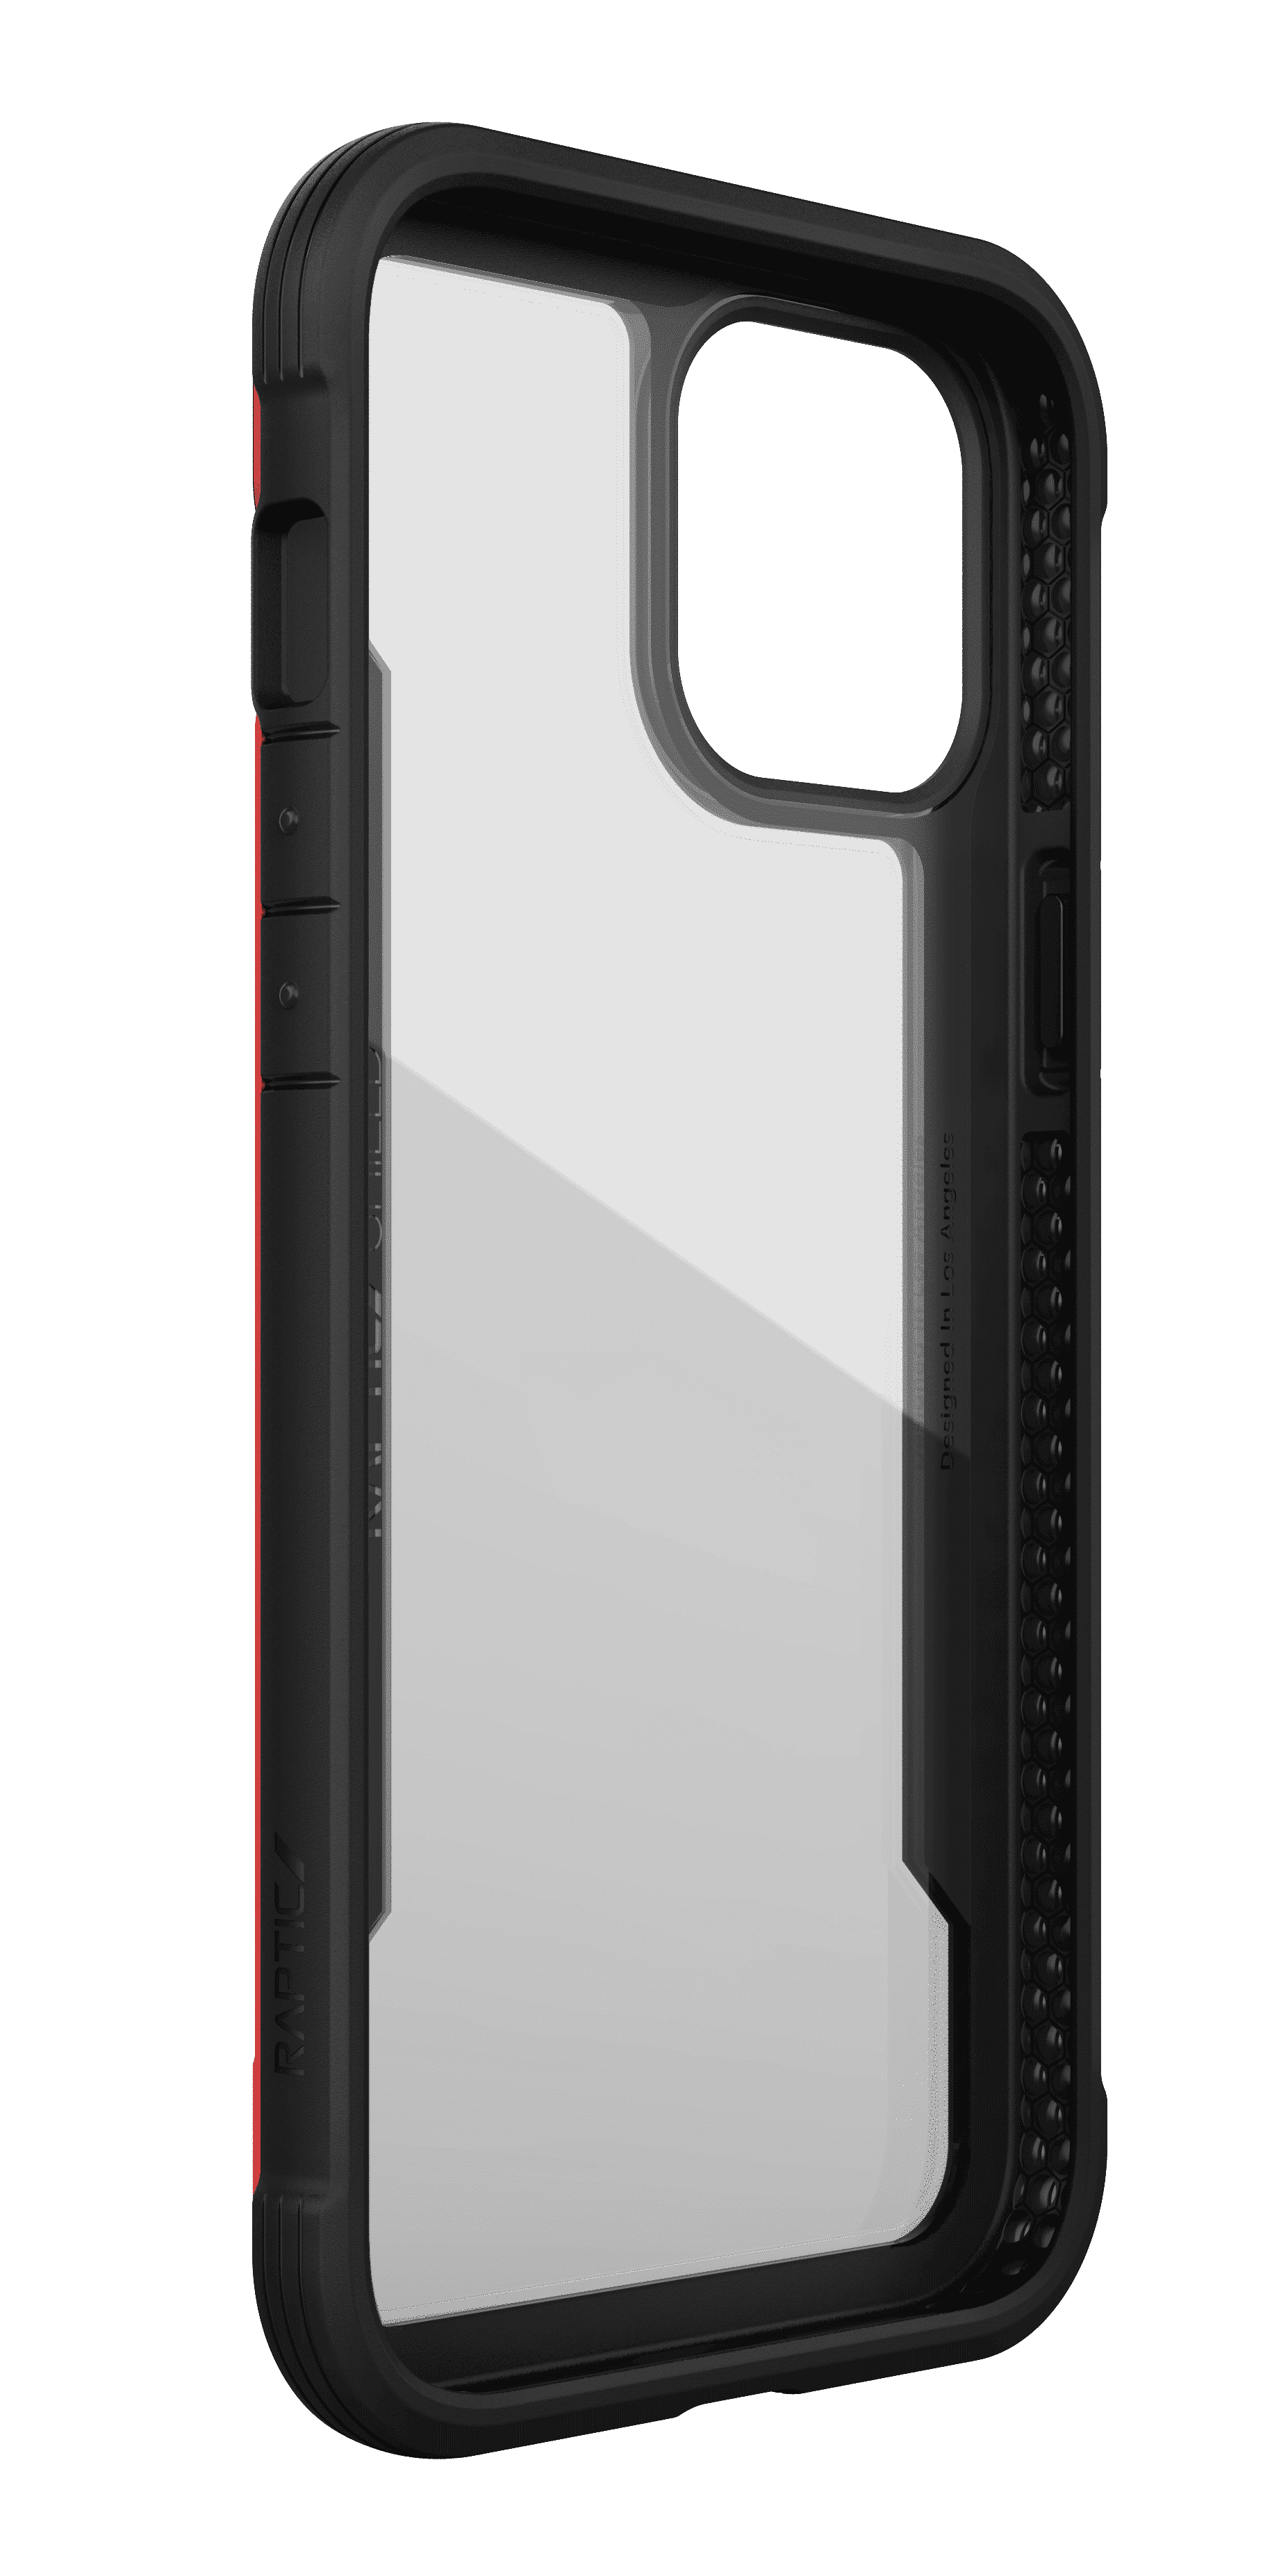 เคส X-Doria รุ่น Raptic Shield - iPhone 12 / 12 Pro - แดง